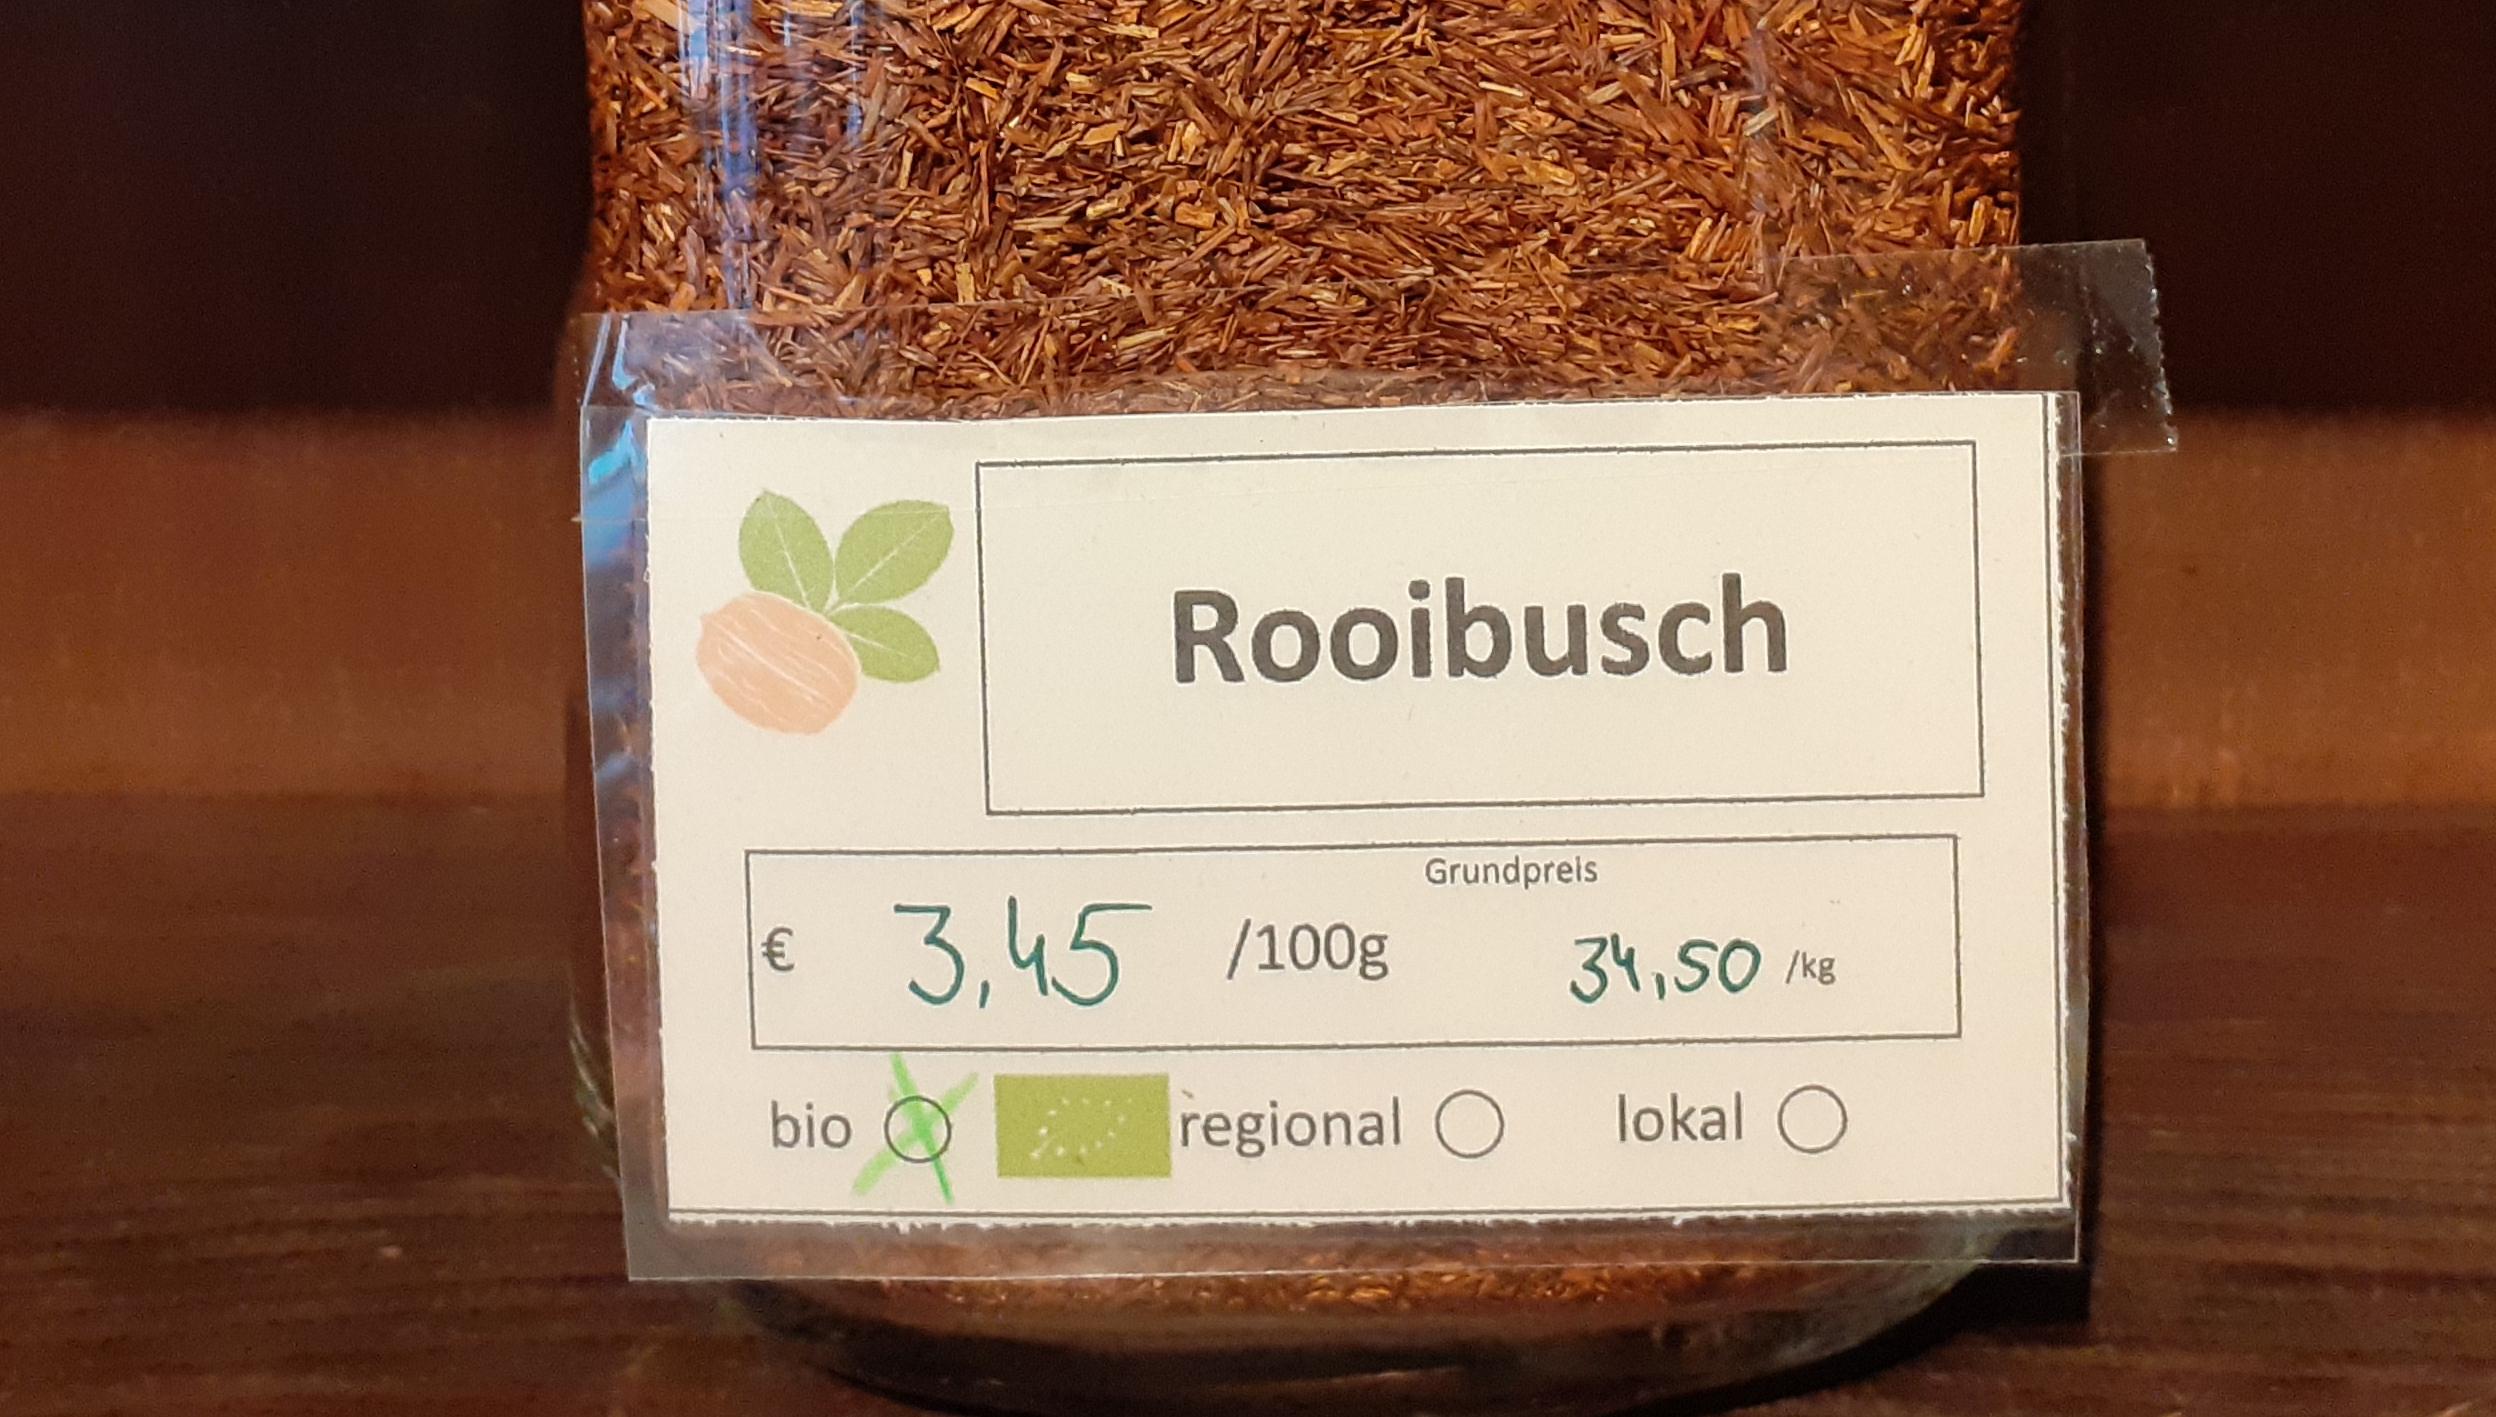 Rooibusch